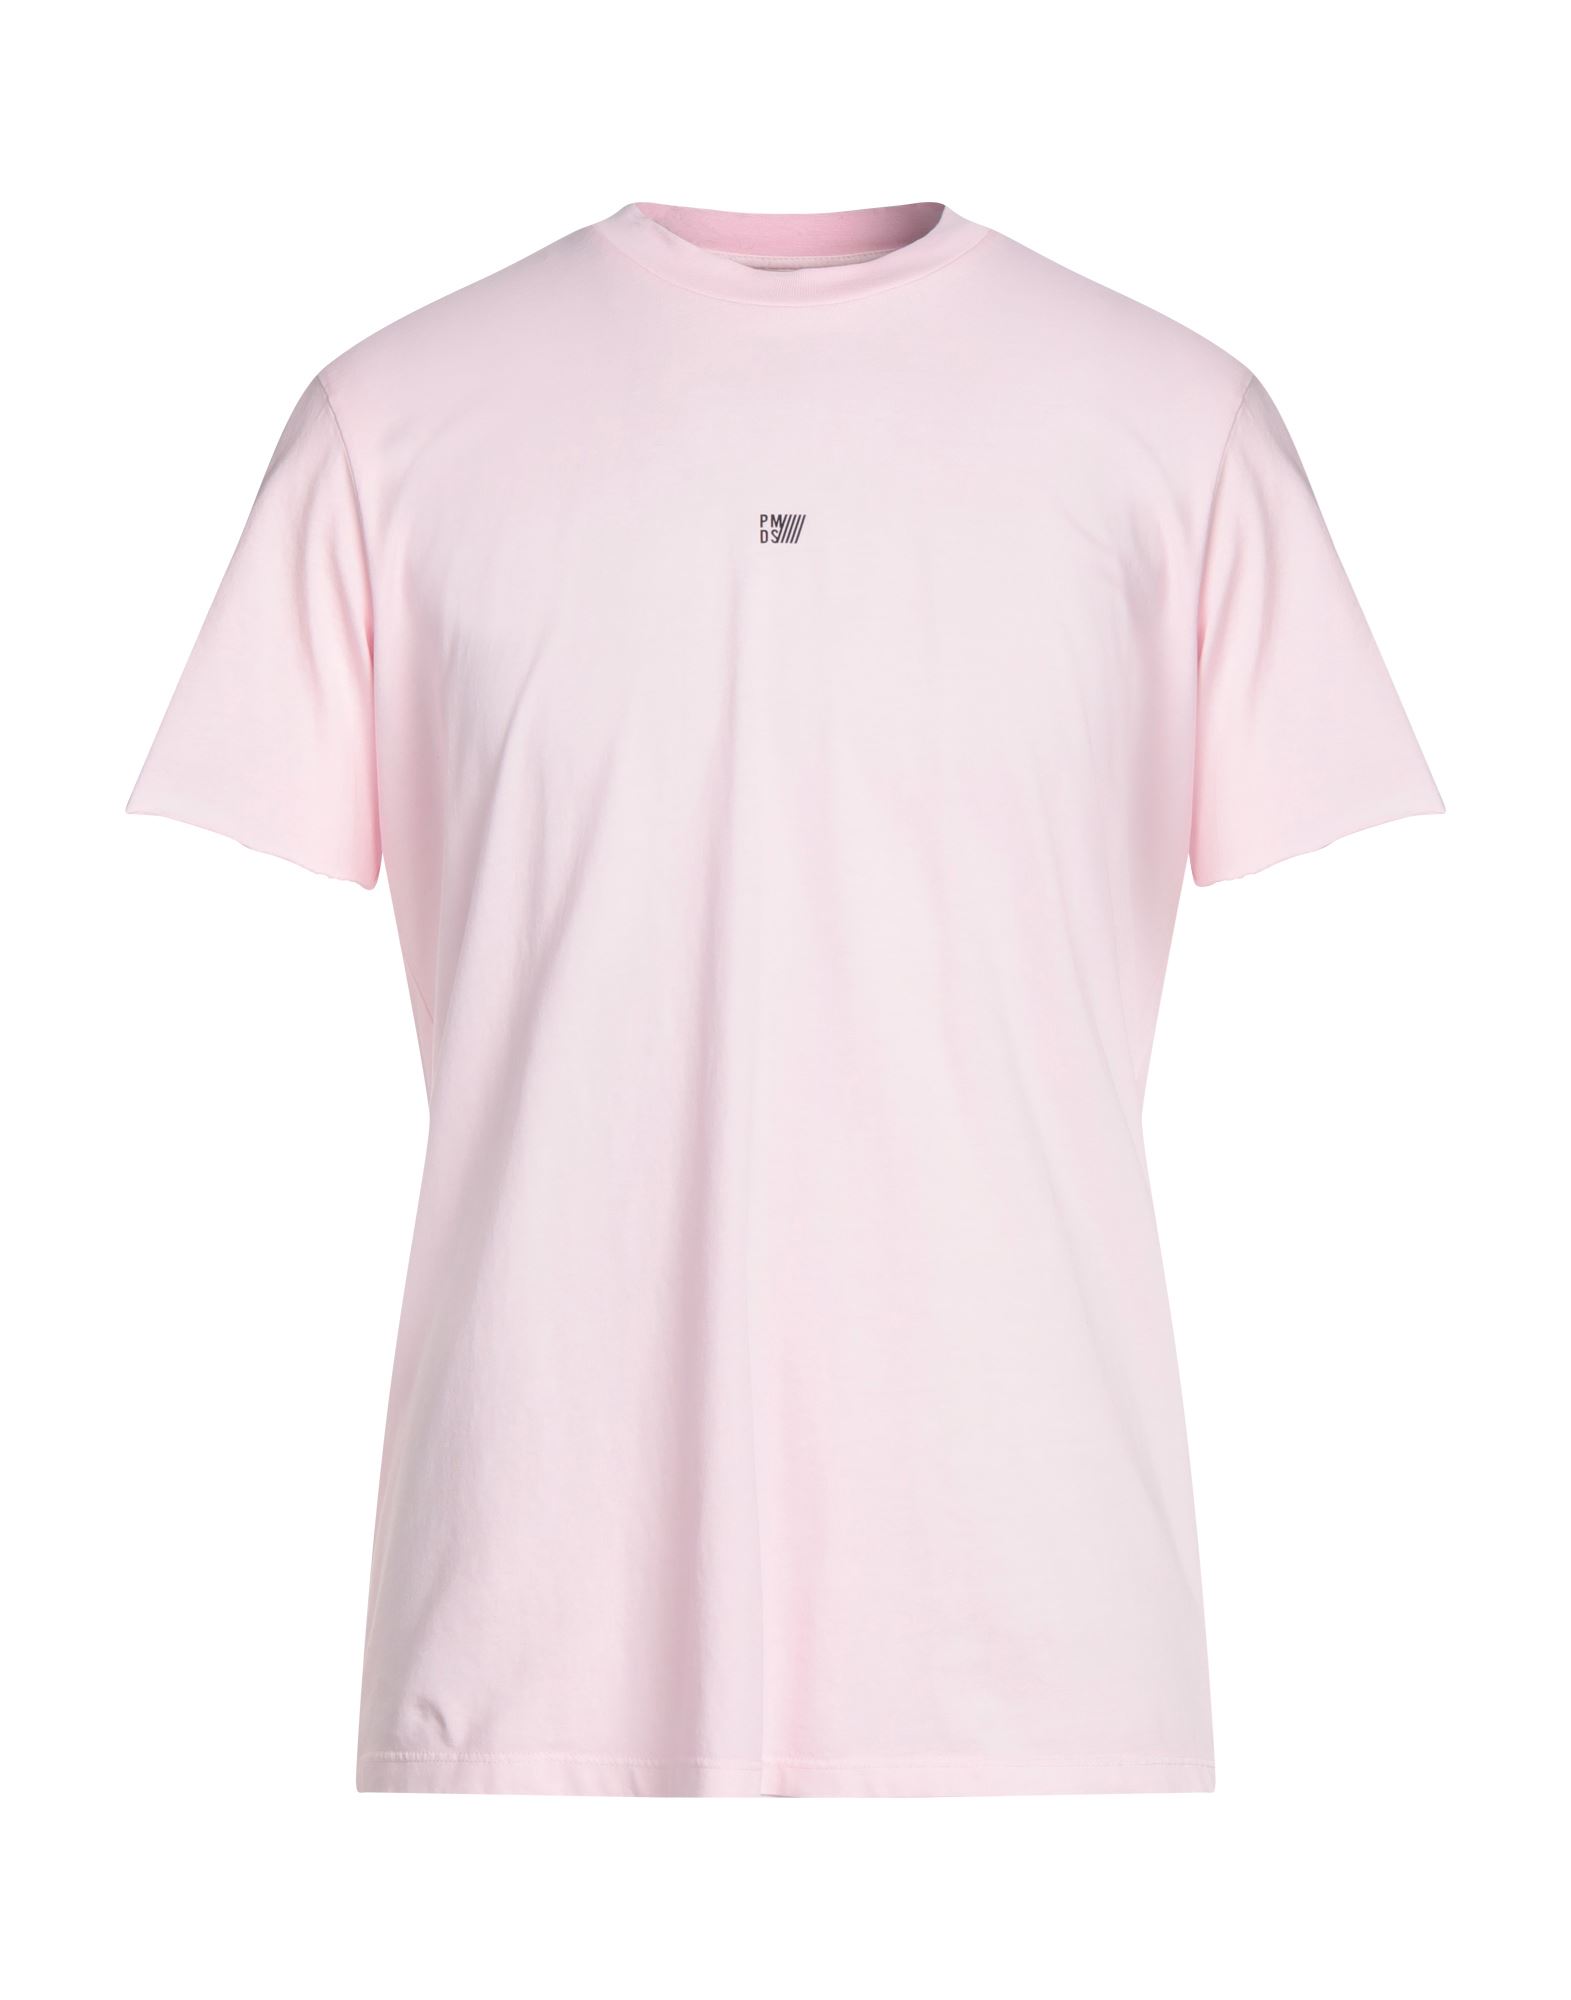 Pmds Premium Mood Denim Superior T-shirts In Pink